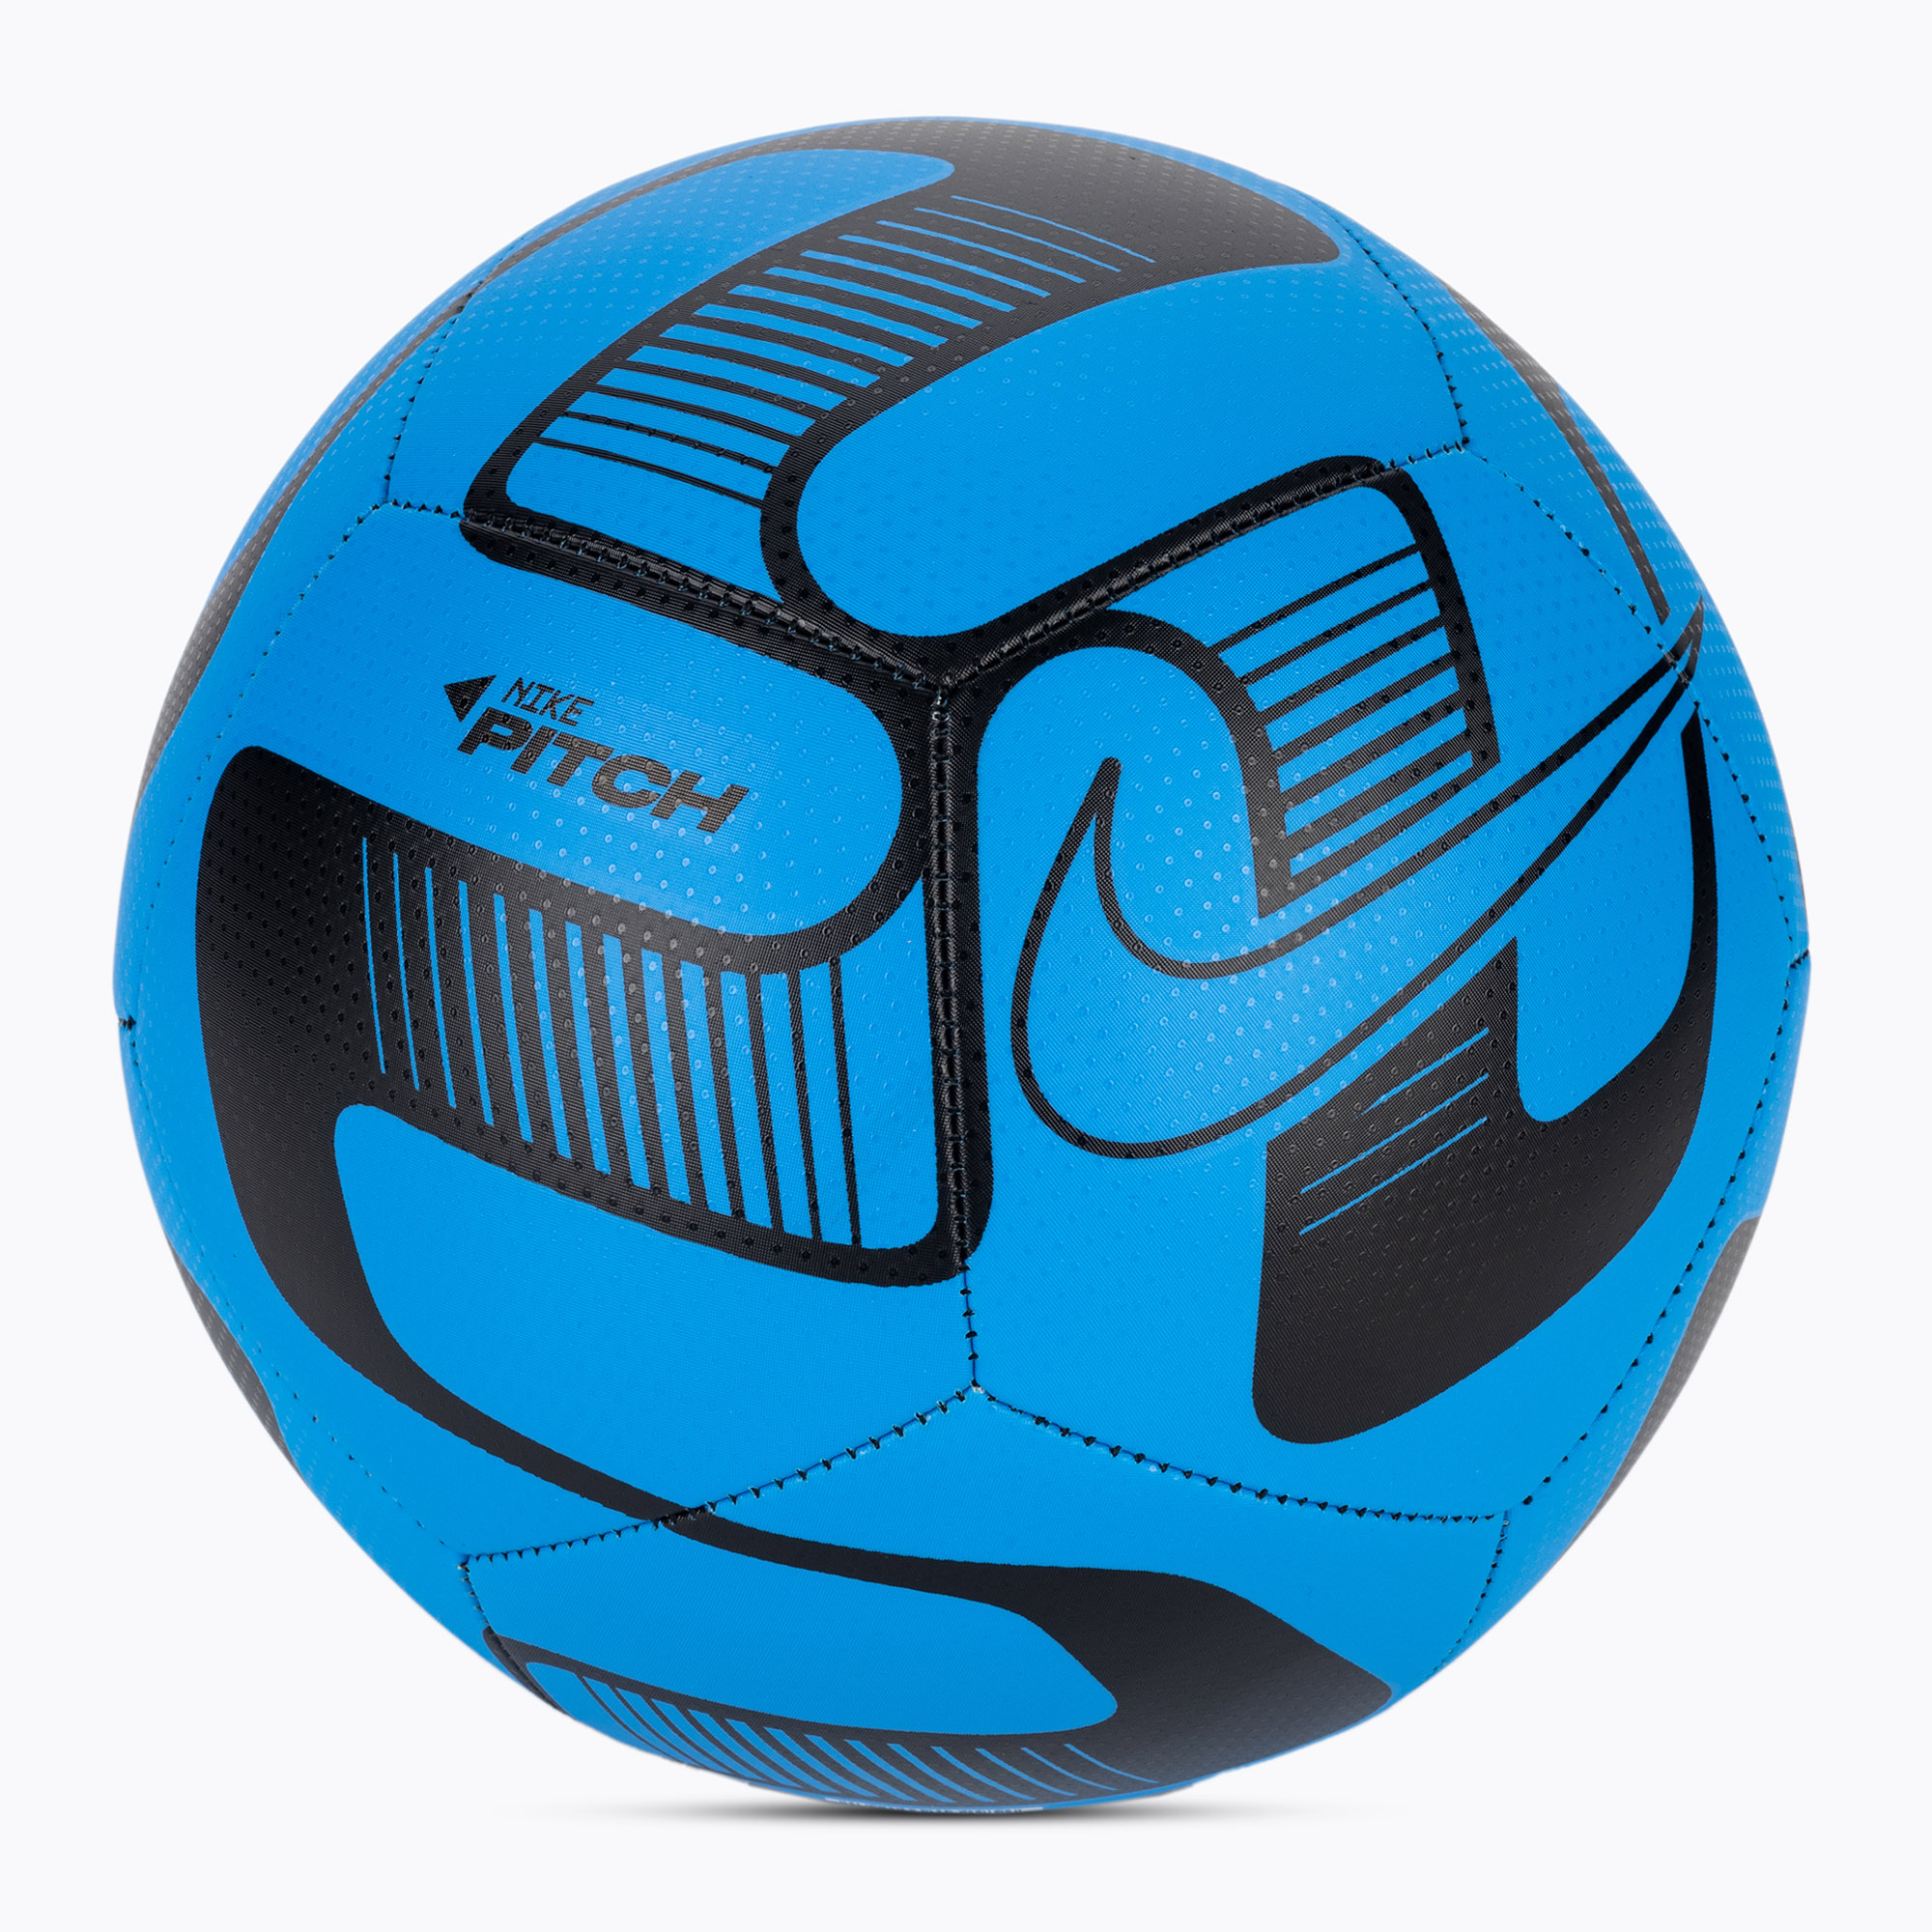 Futbalová lopta Nike Pitch futbal foto modrá/foto modrá/čierna veľkosť 4